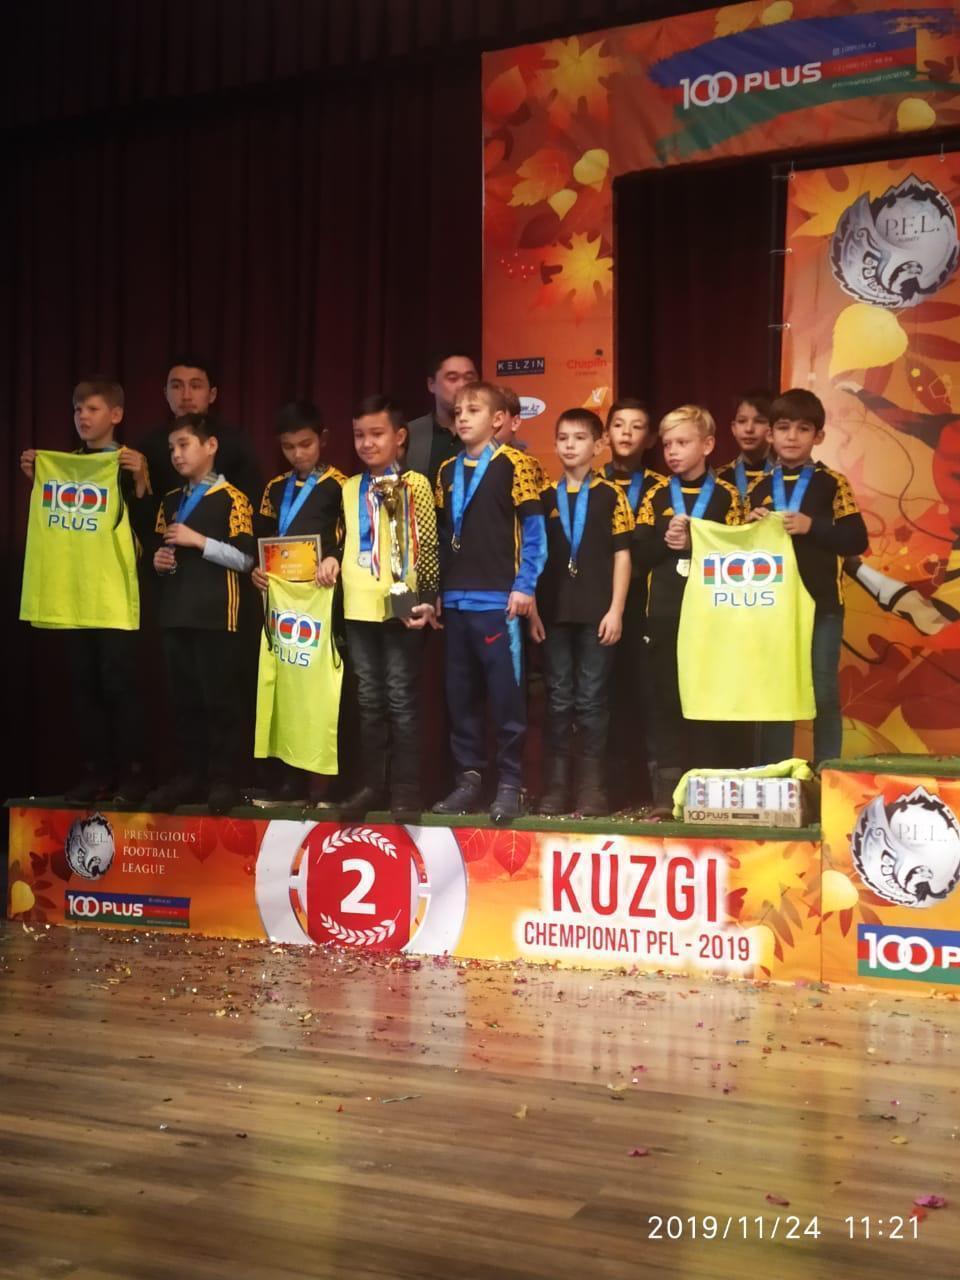 Юные футболисты- обучающиеся 3-4 классов  футбольного клуба "Турксиб" КГУ ОШ 85 были награждены дипломами и кубками за занятое 2и 3 места в городских соревнованиях по футболу "Kuzgi chempionat PFL Almaty 2019".